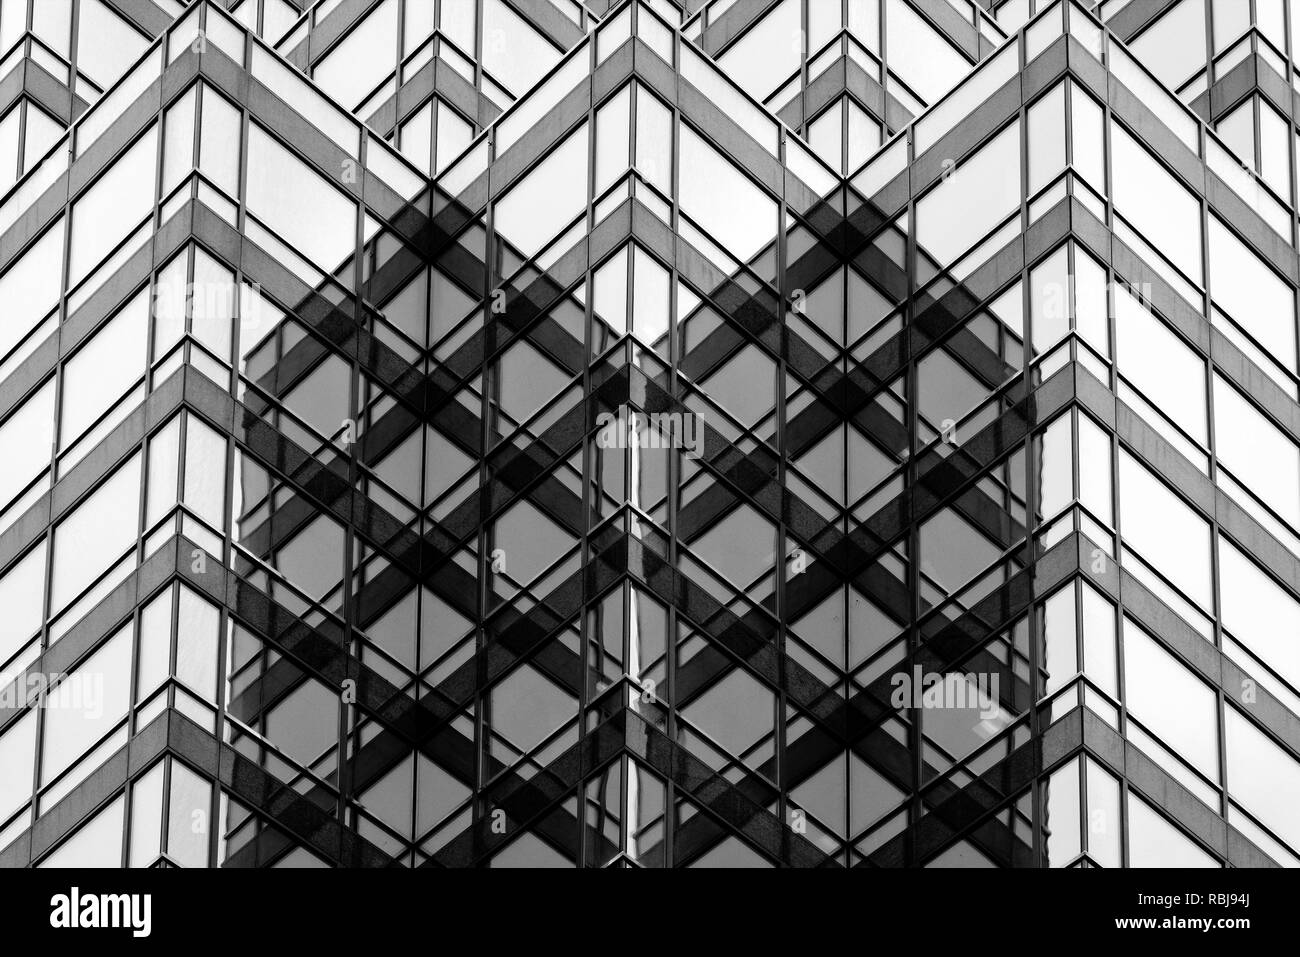 Dettagli architettonici di un Queen Street East Tower nel centro cittadino di Toronto, Canada Foto Stock